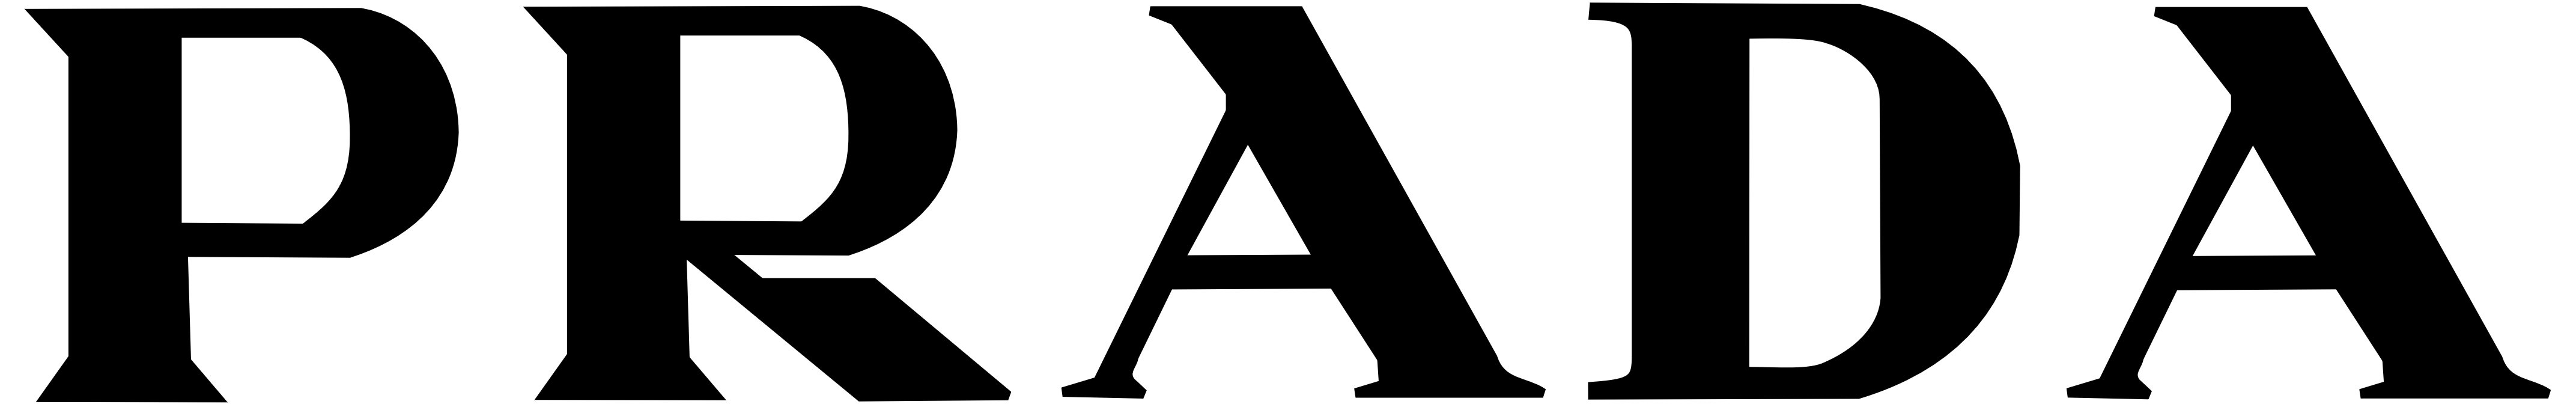 prada logo white